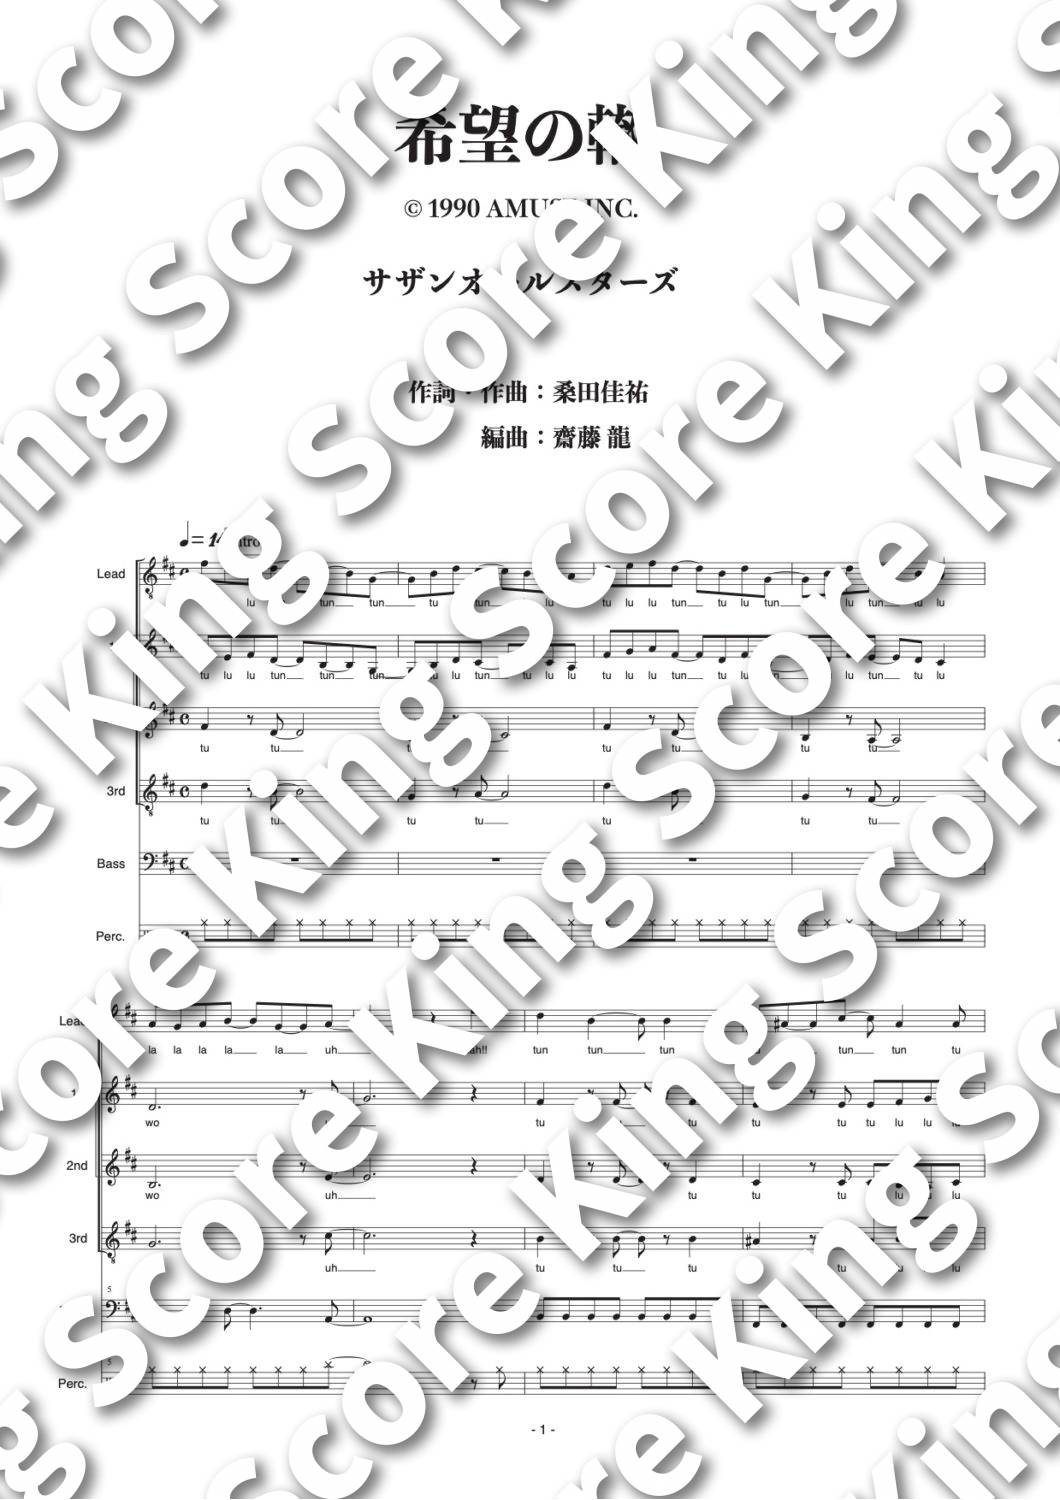 希望の轍 サザンオールスターズ フジテレビ系列 僕だけのマドンナ 挿入歌 King Score アカペラ専門の楽譜販売サイト